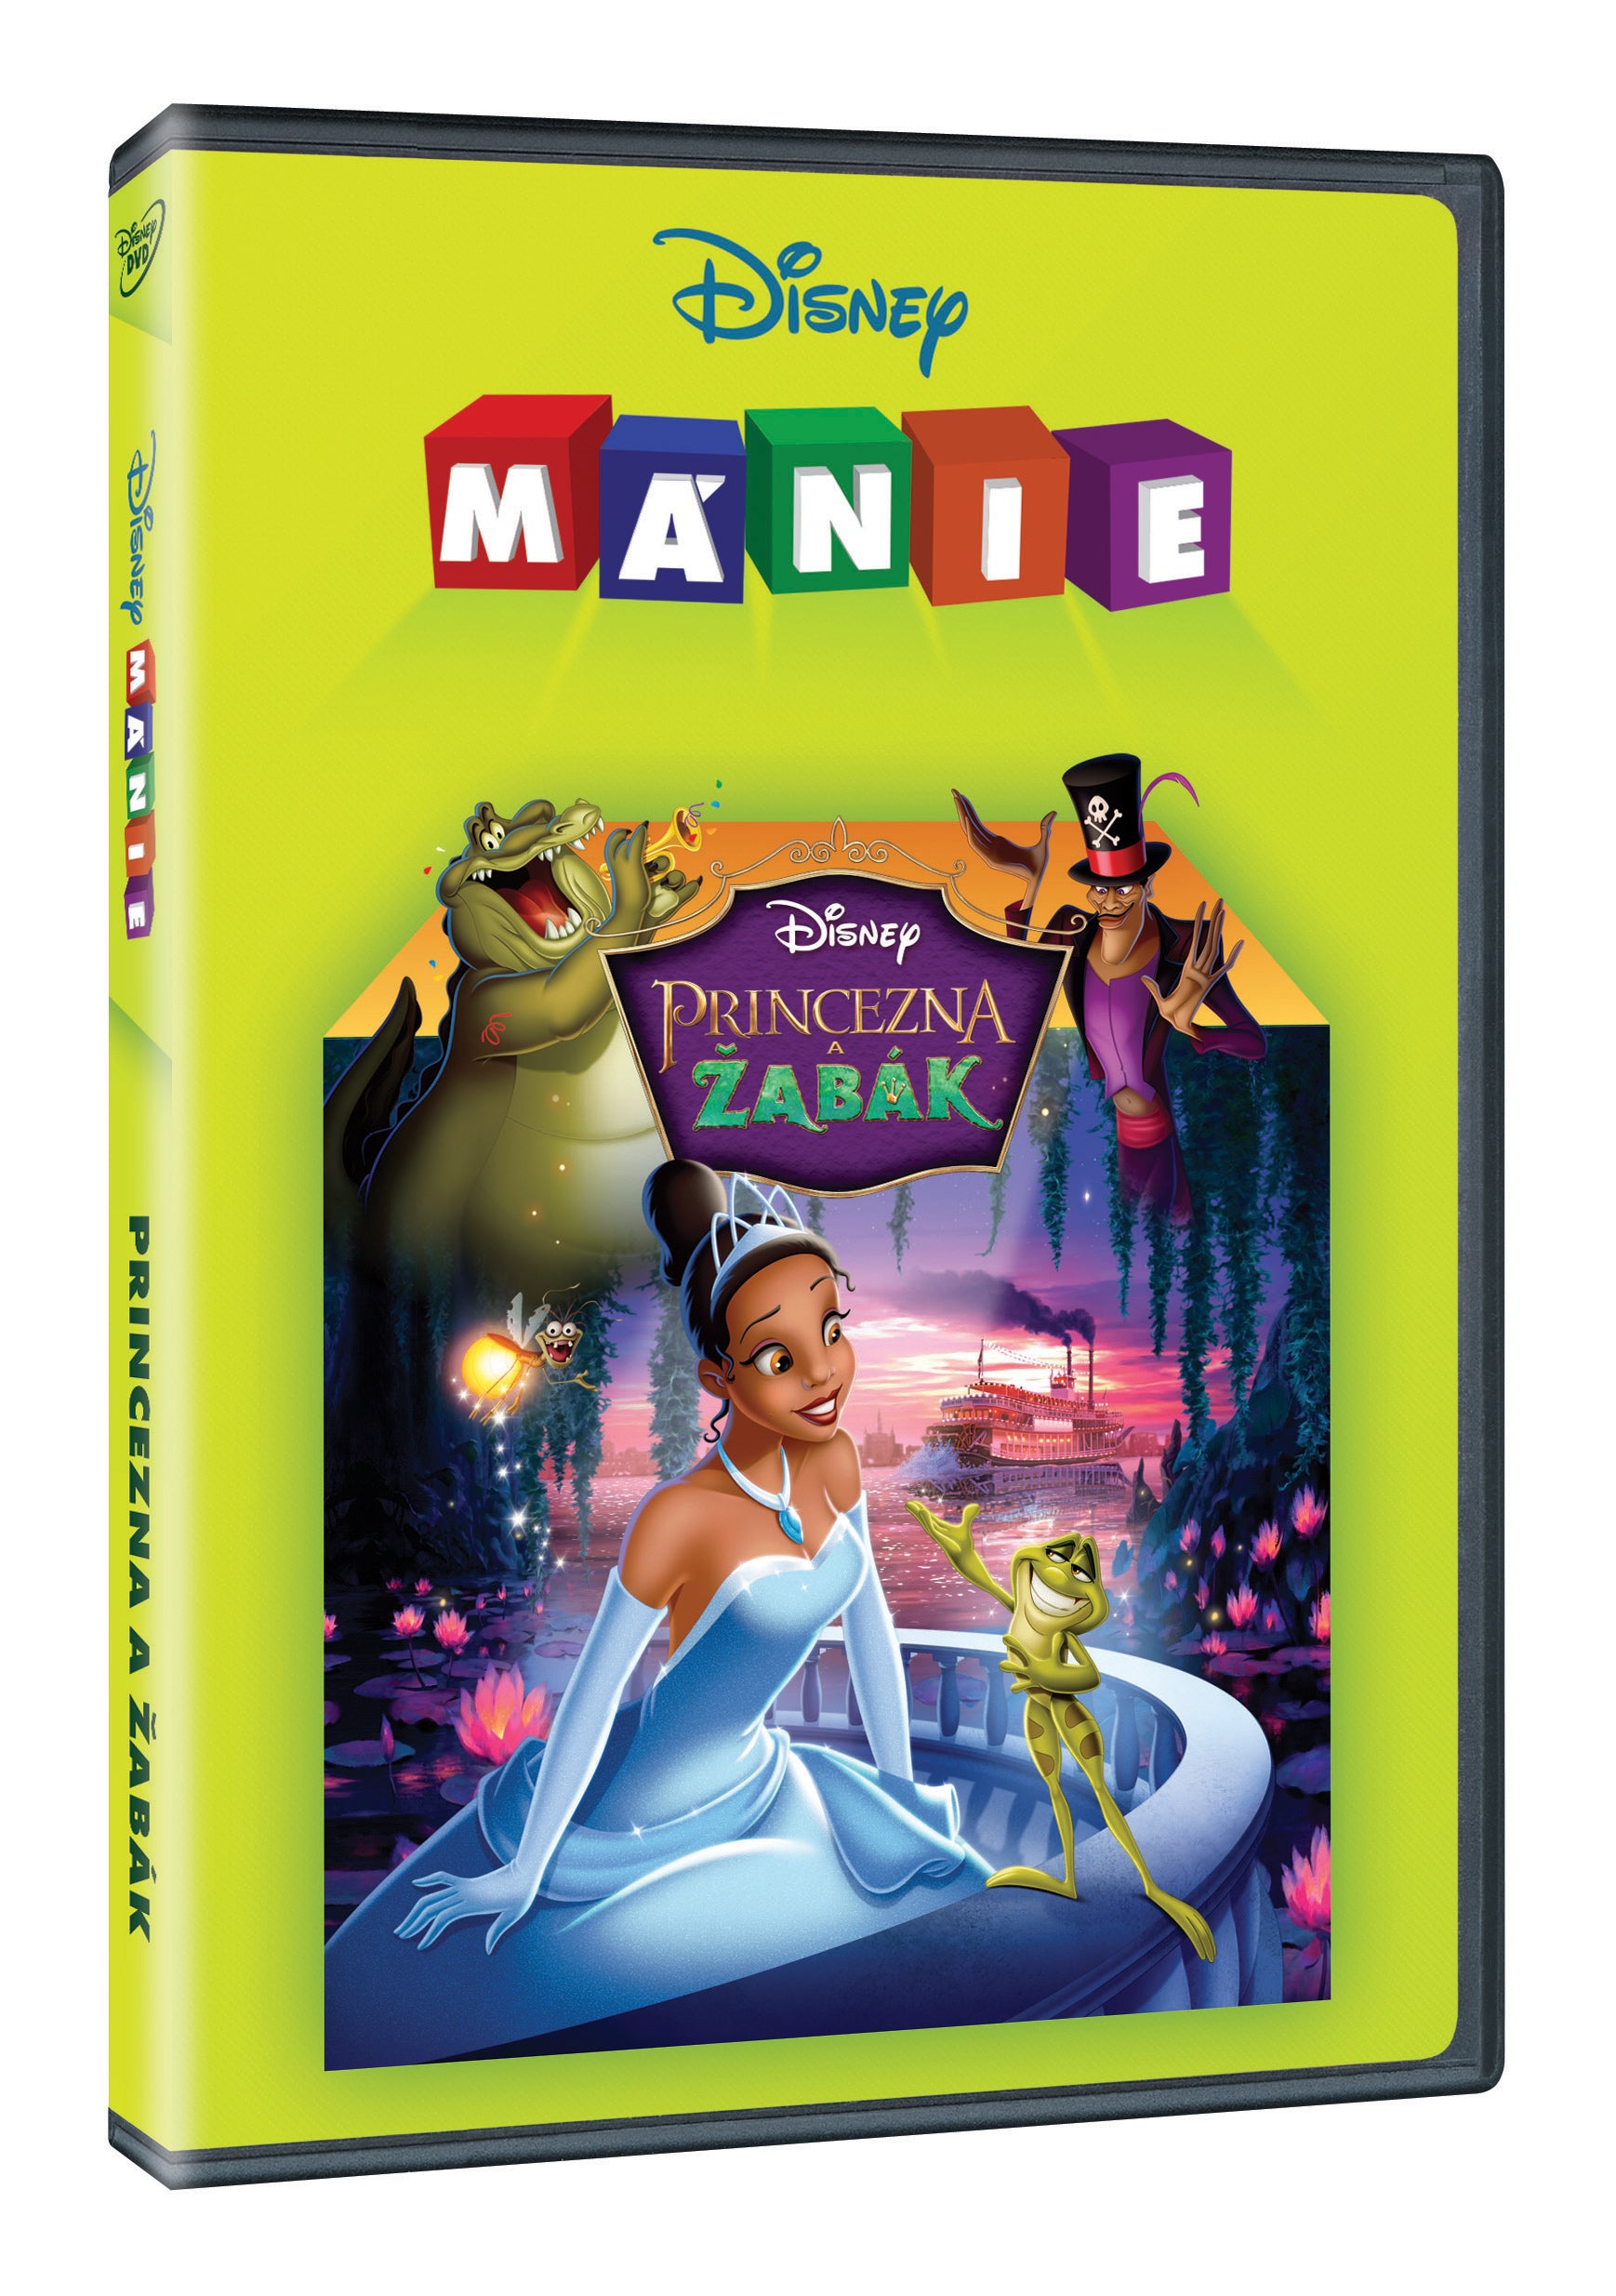 Princezna a zabak - Disney manie (The Princess And The Frog)